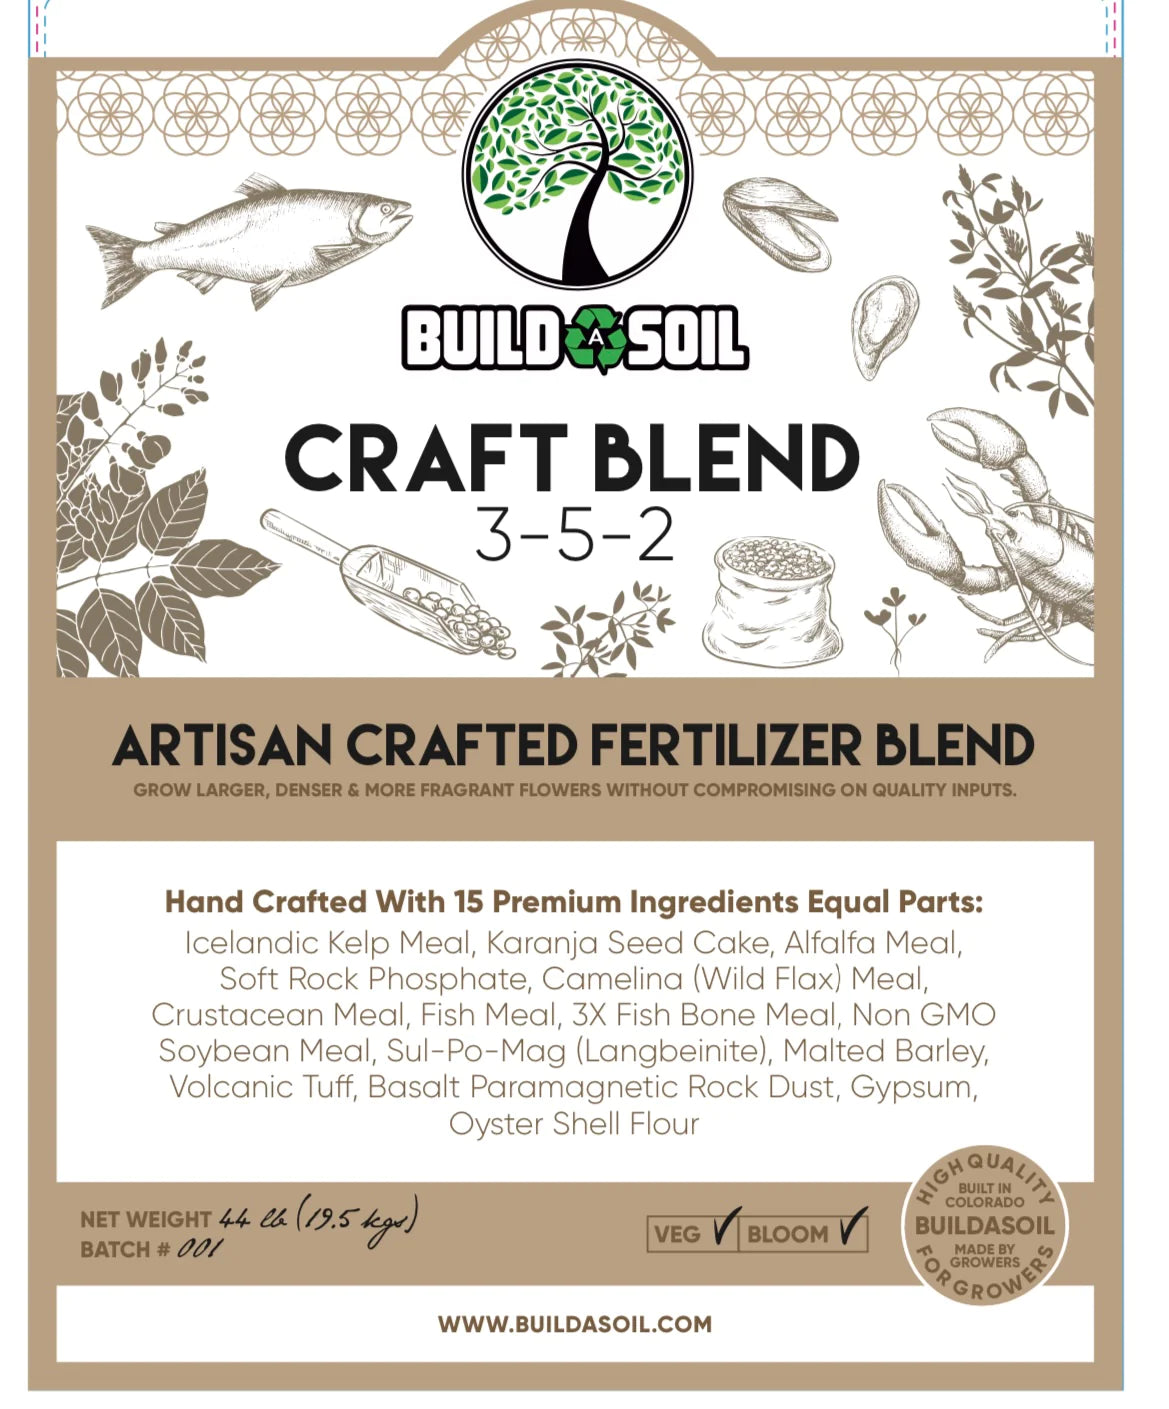 BuildASoil Craft Blend (Artisan Crafter Fertilizer Blend) (3-5-2)